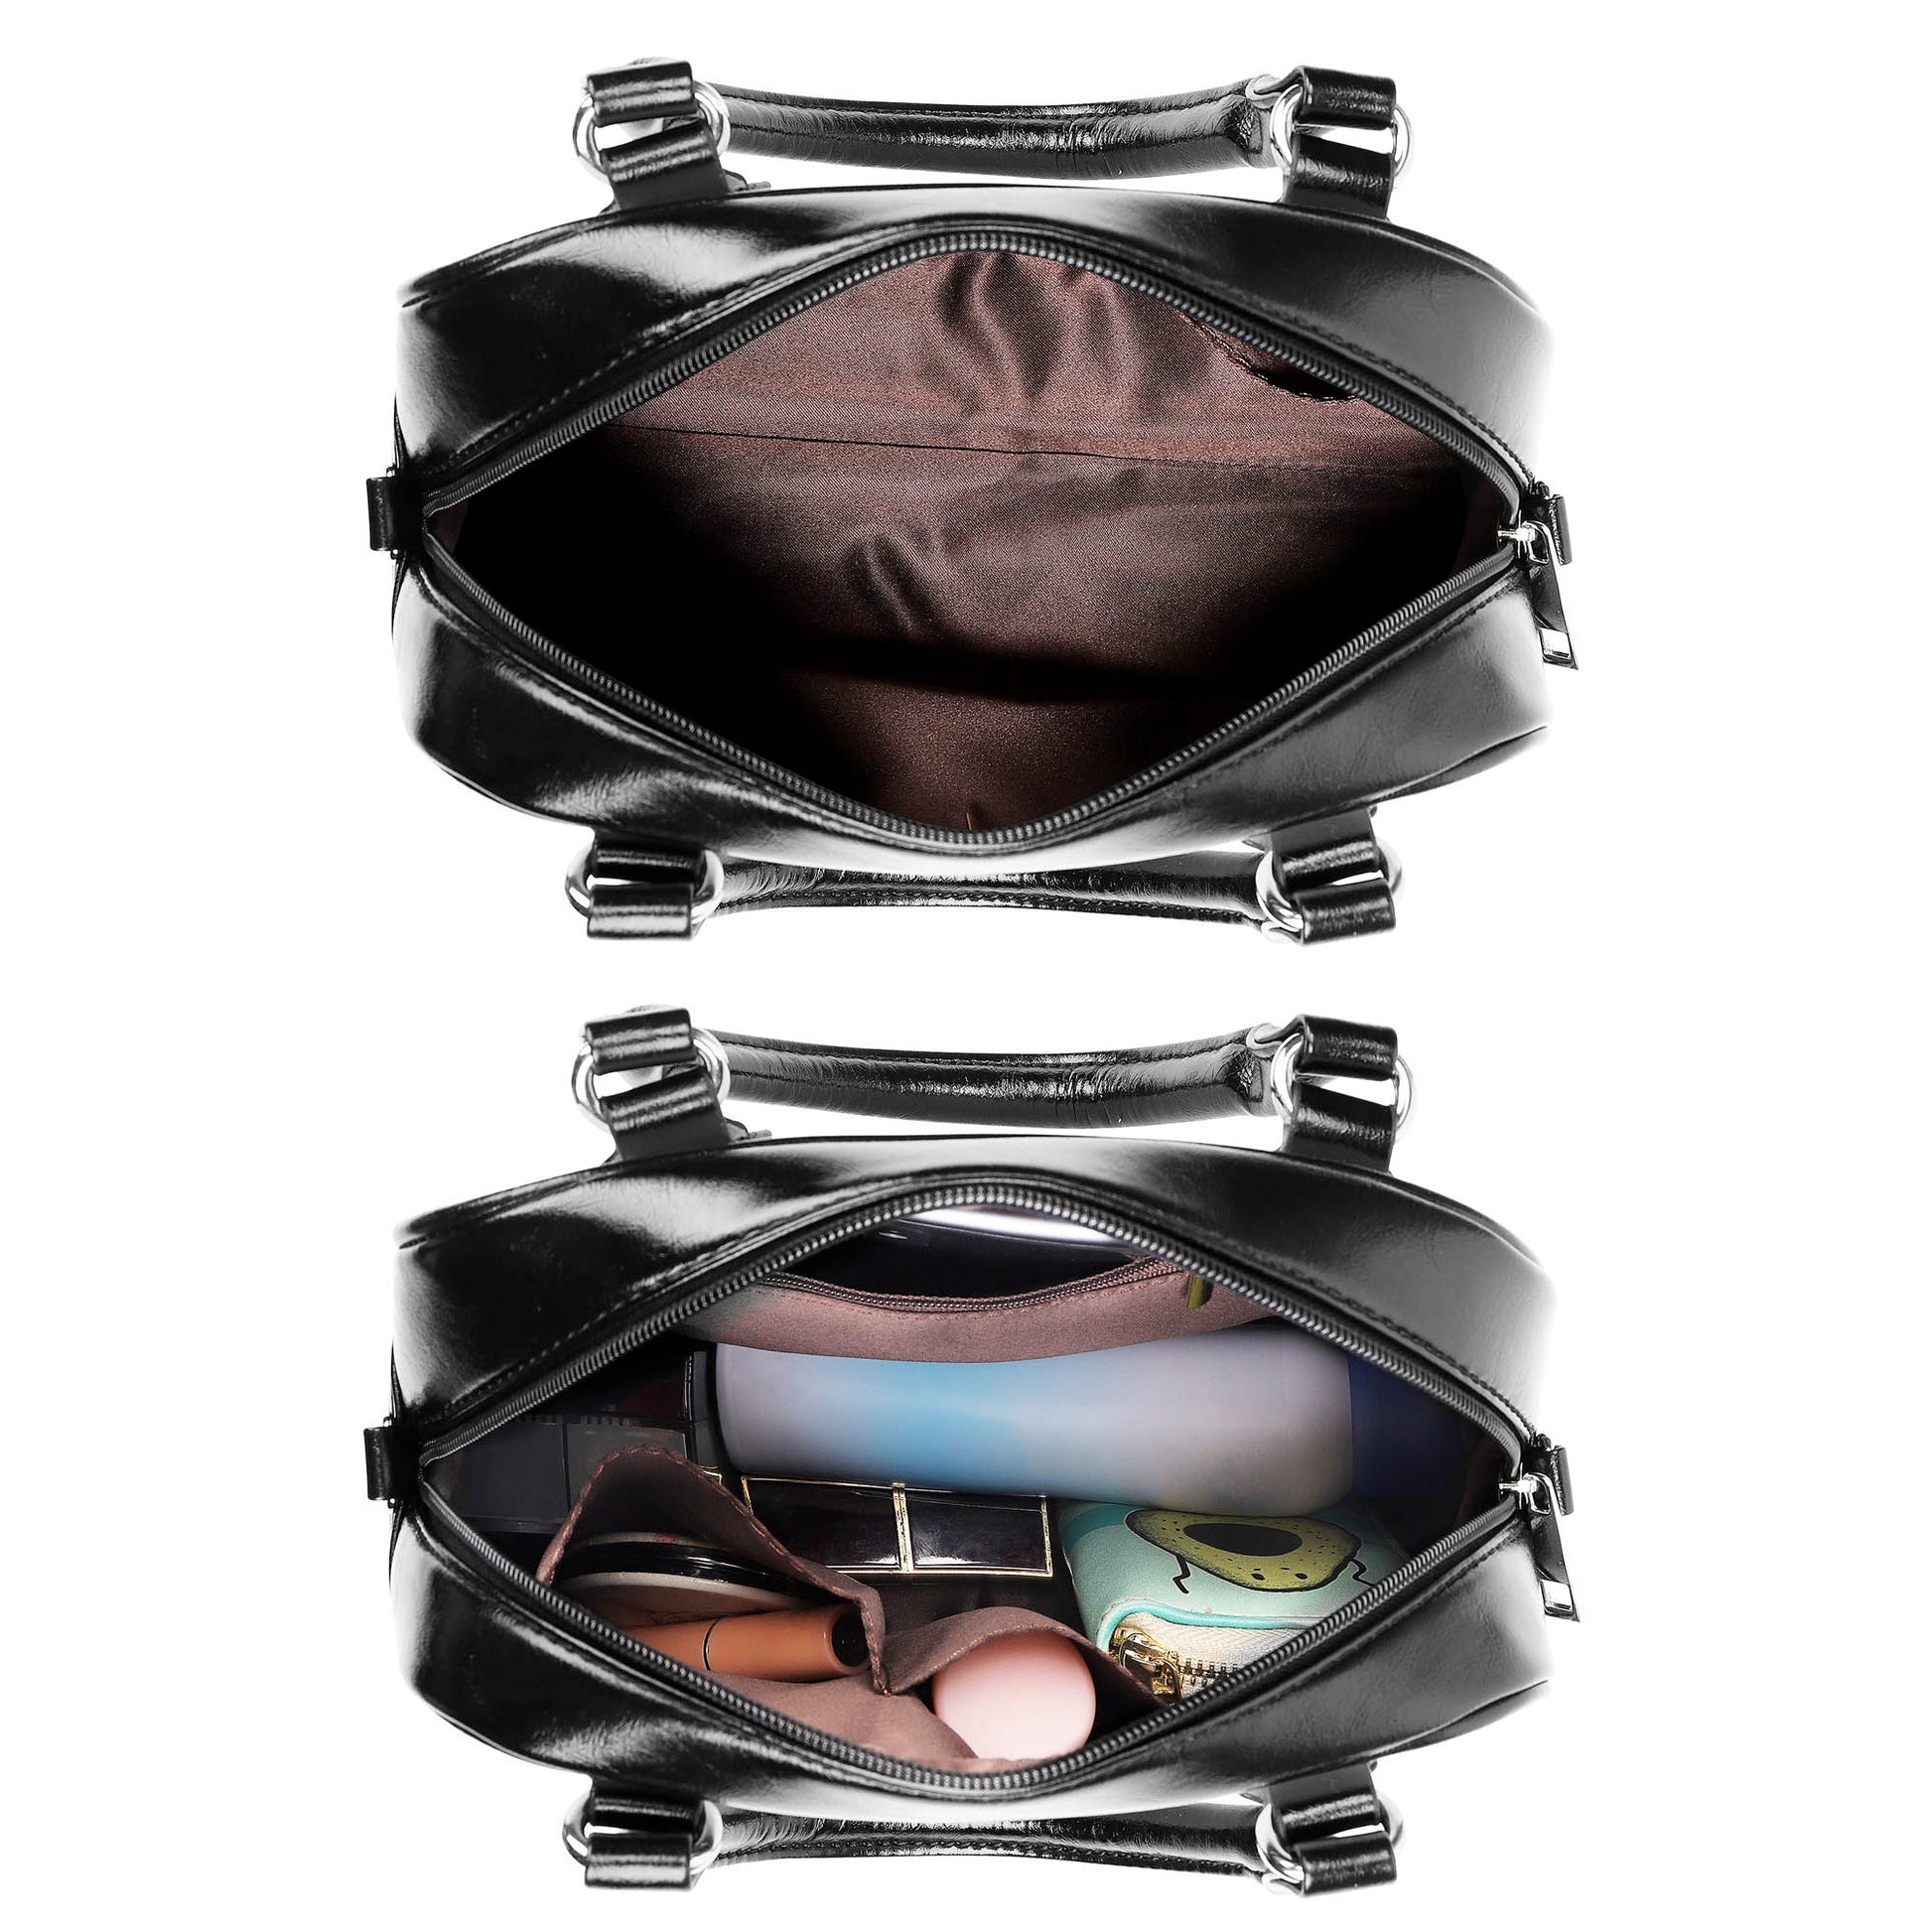 MacMillan Old Weathered Tartan Shoulder Handbags - Tartanvibesclothing